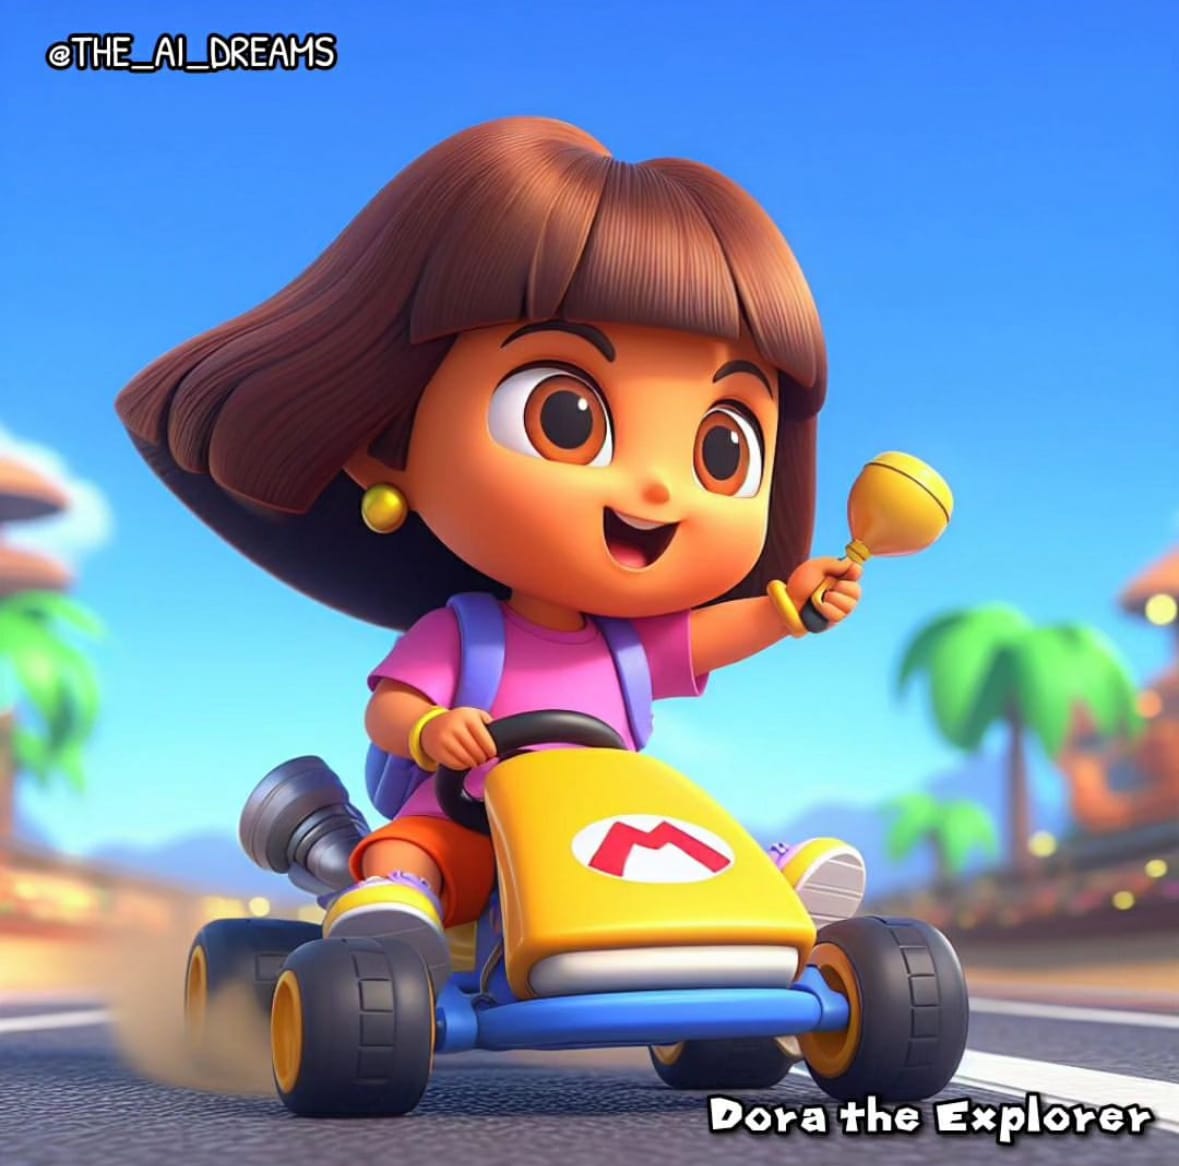 ตัวละครจากหนังและการ์ตูนดังในเกมแข่งรถ Mario Kart aiart